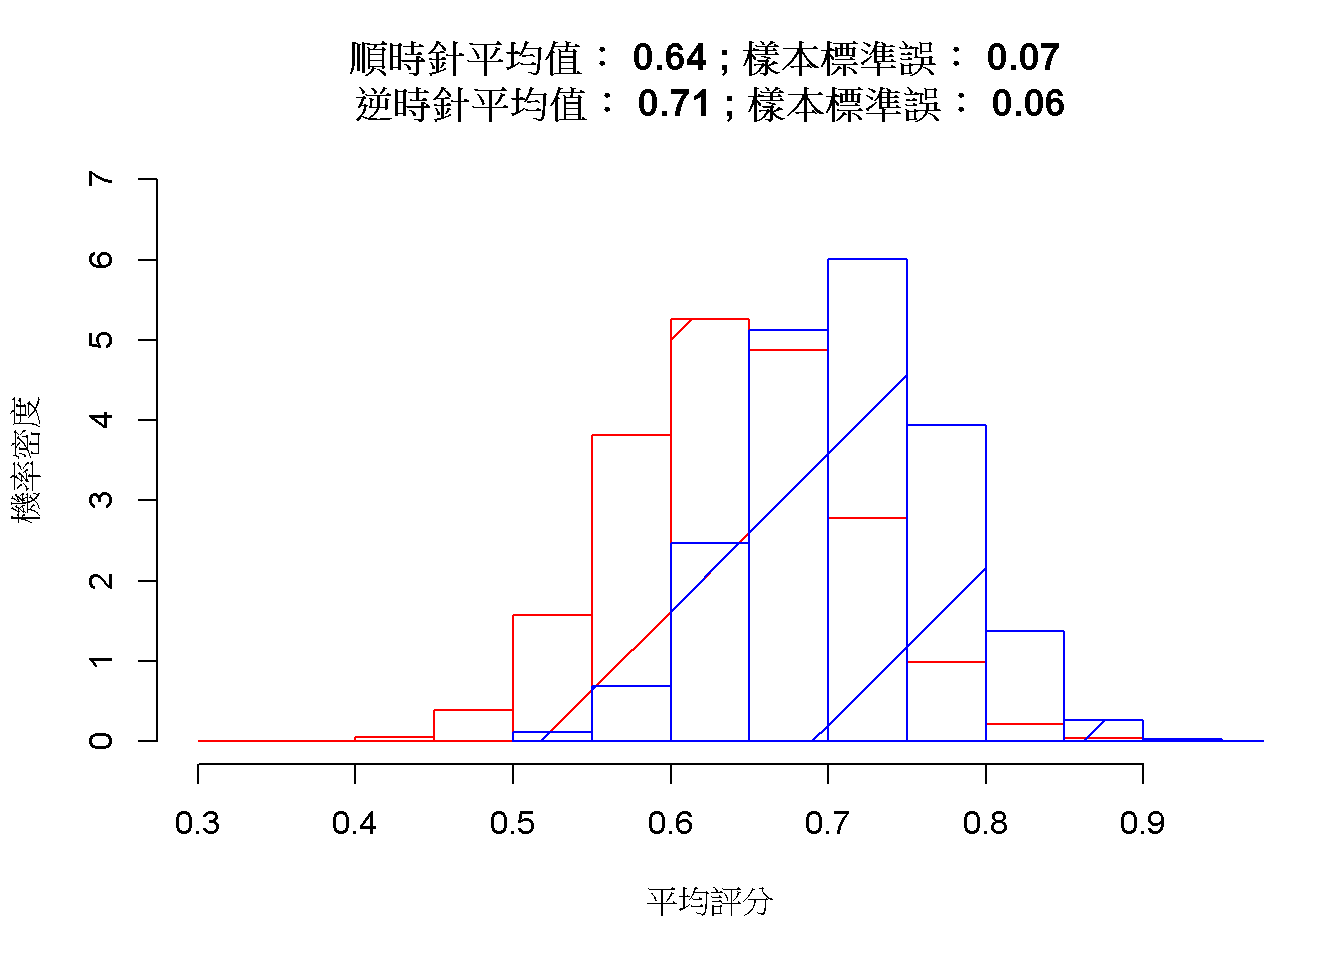 順時針(紅色)與逆時針(藍色)的樣本平均值抽樣分佈。